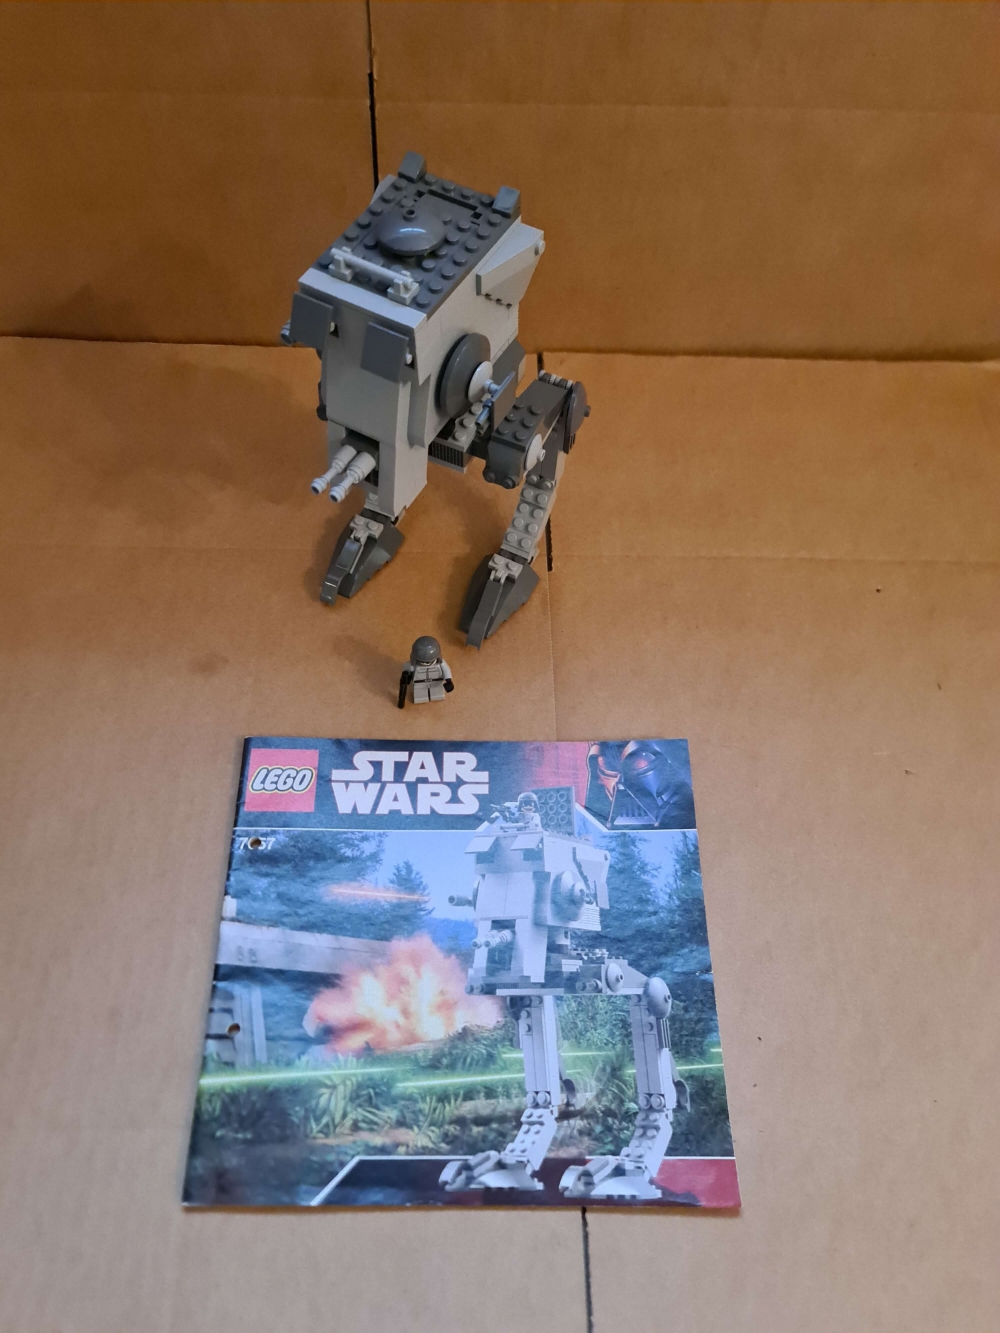 Sett 7657 fra Lego Star Wars: Episode 4/5/6 serien.

Meget pent.
Komplett med manual.